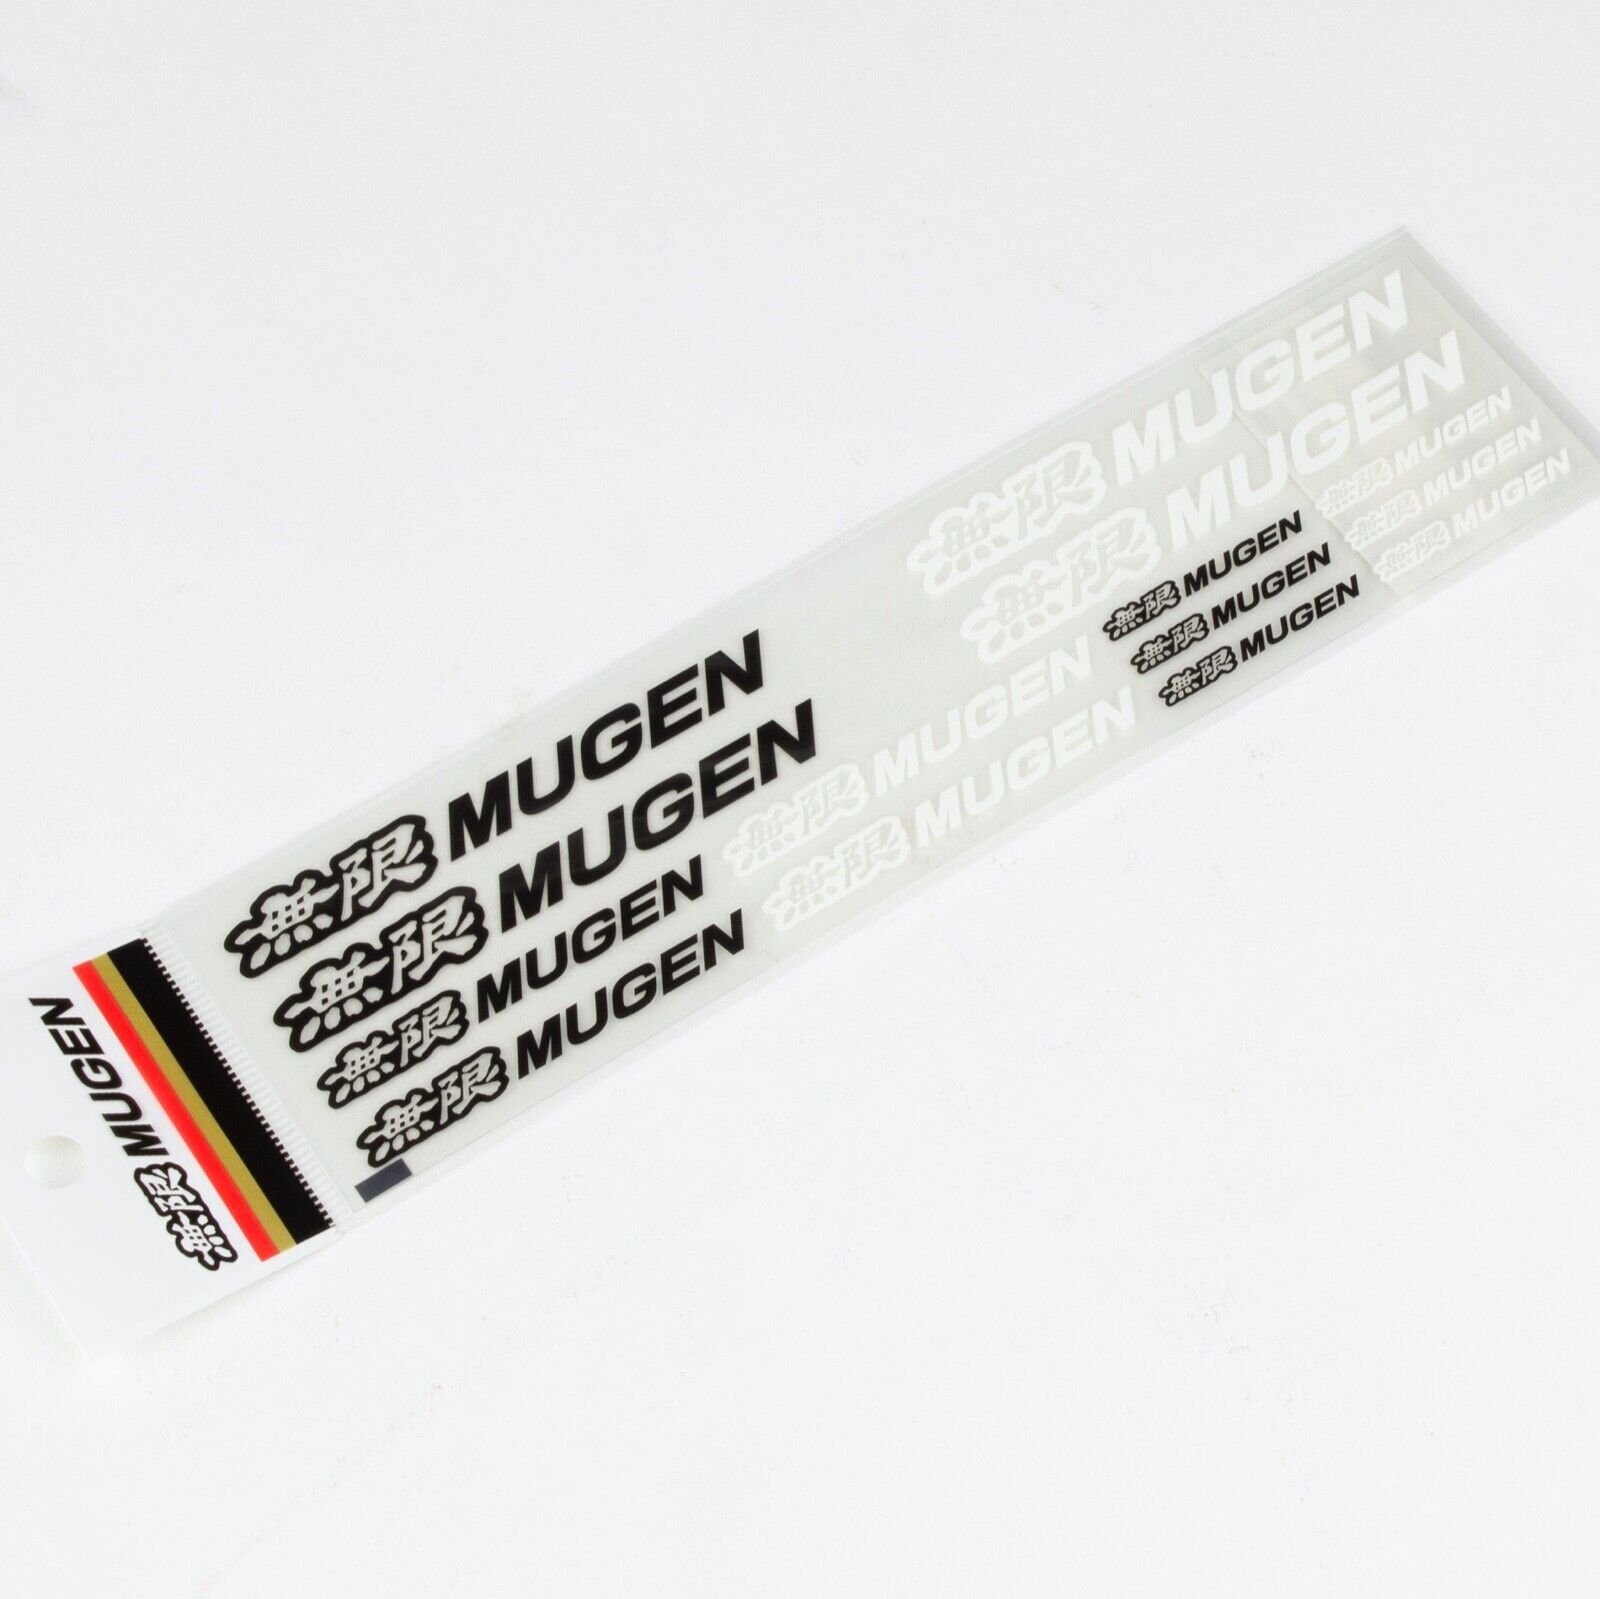 Genuine Mugen Sticker Decal Set BLK/WHT 3.25', 2.25', 1.25' - (14 PC) YZ5-314B